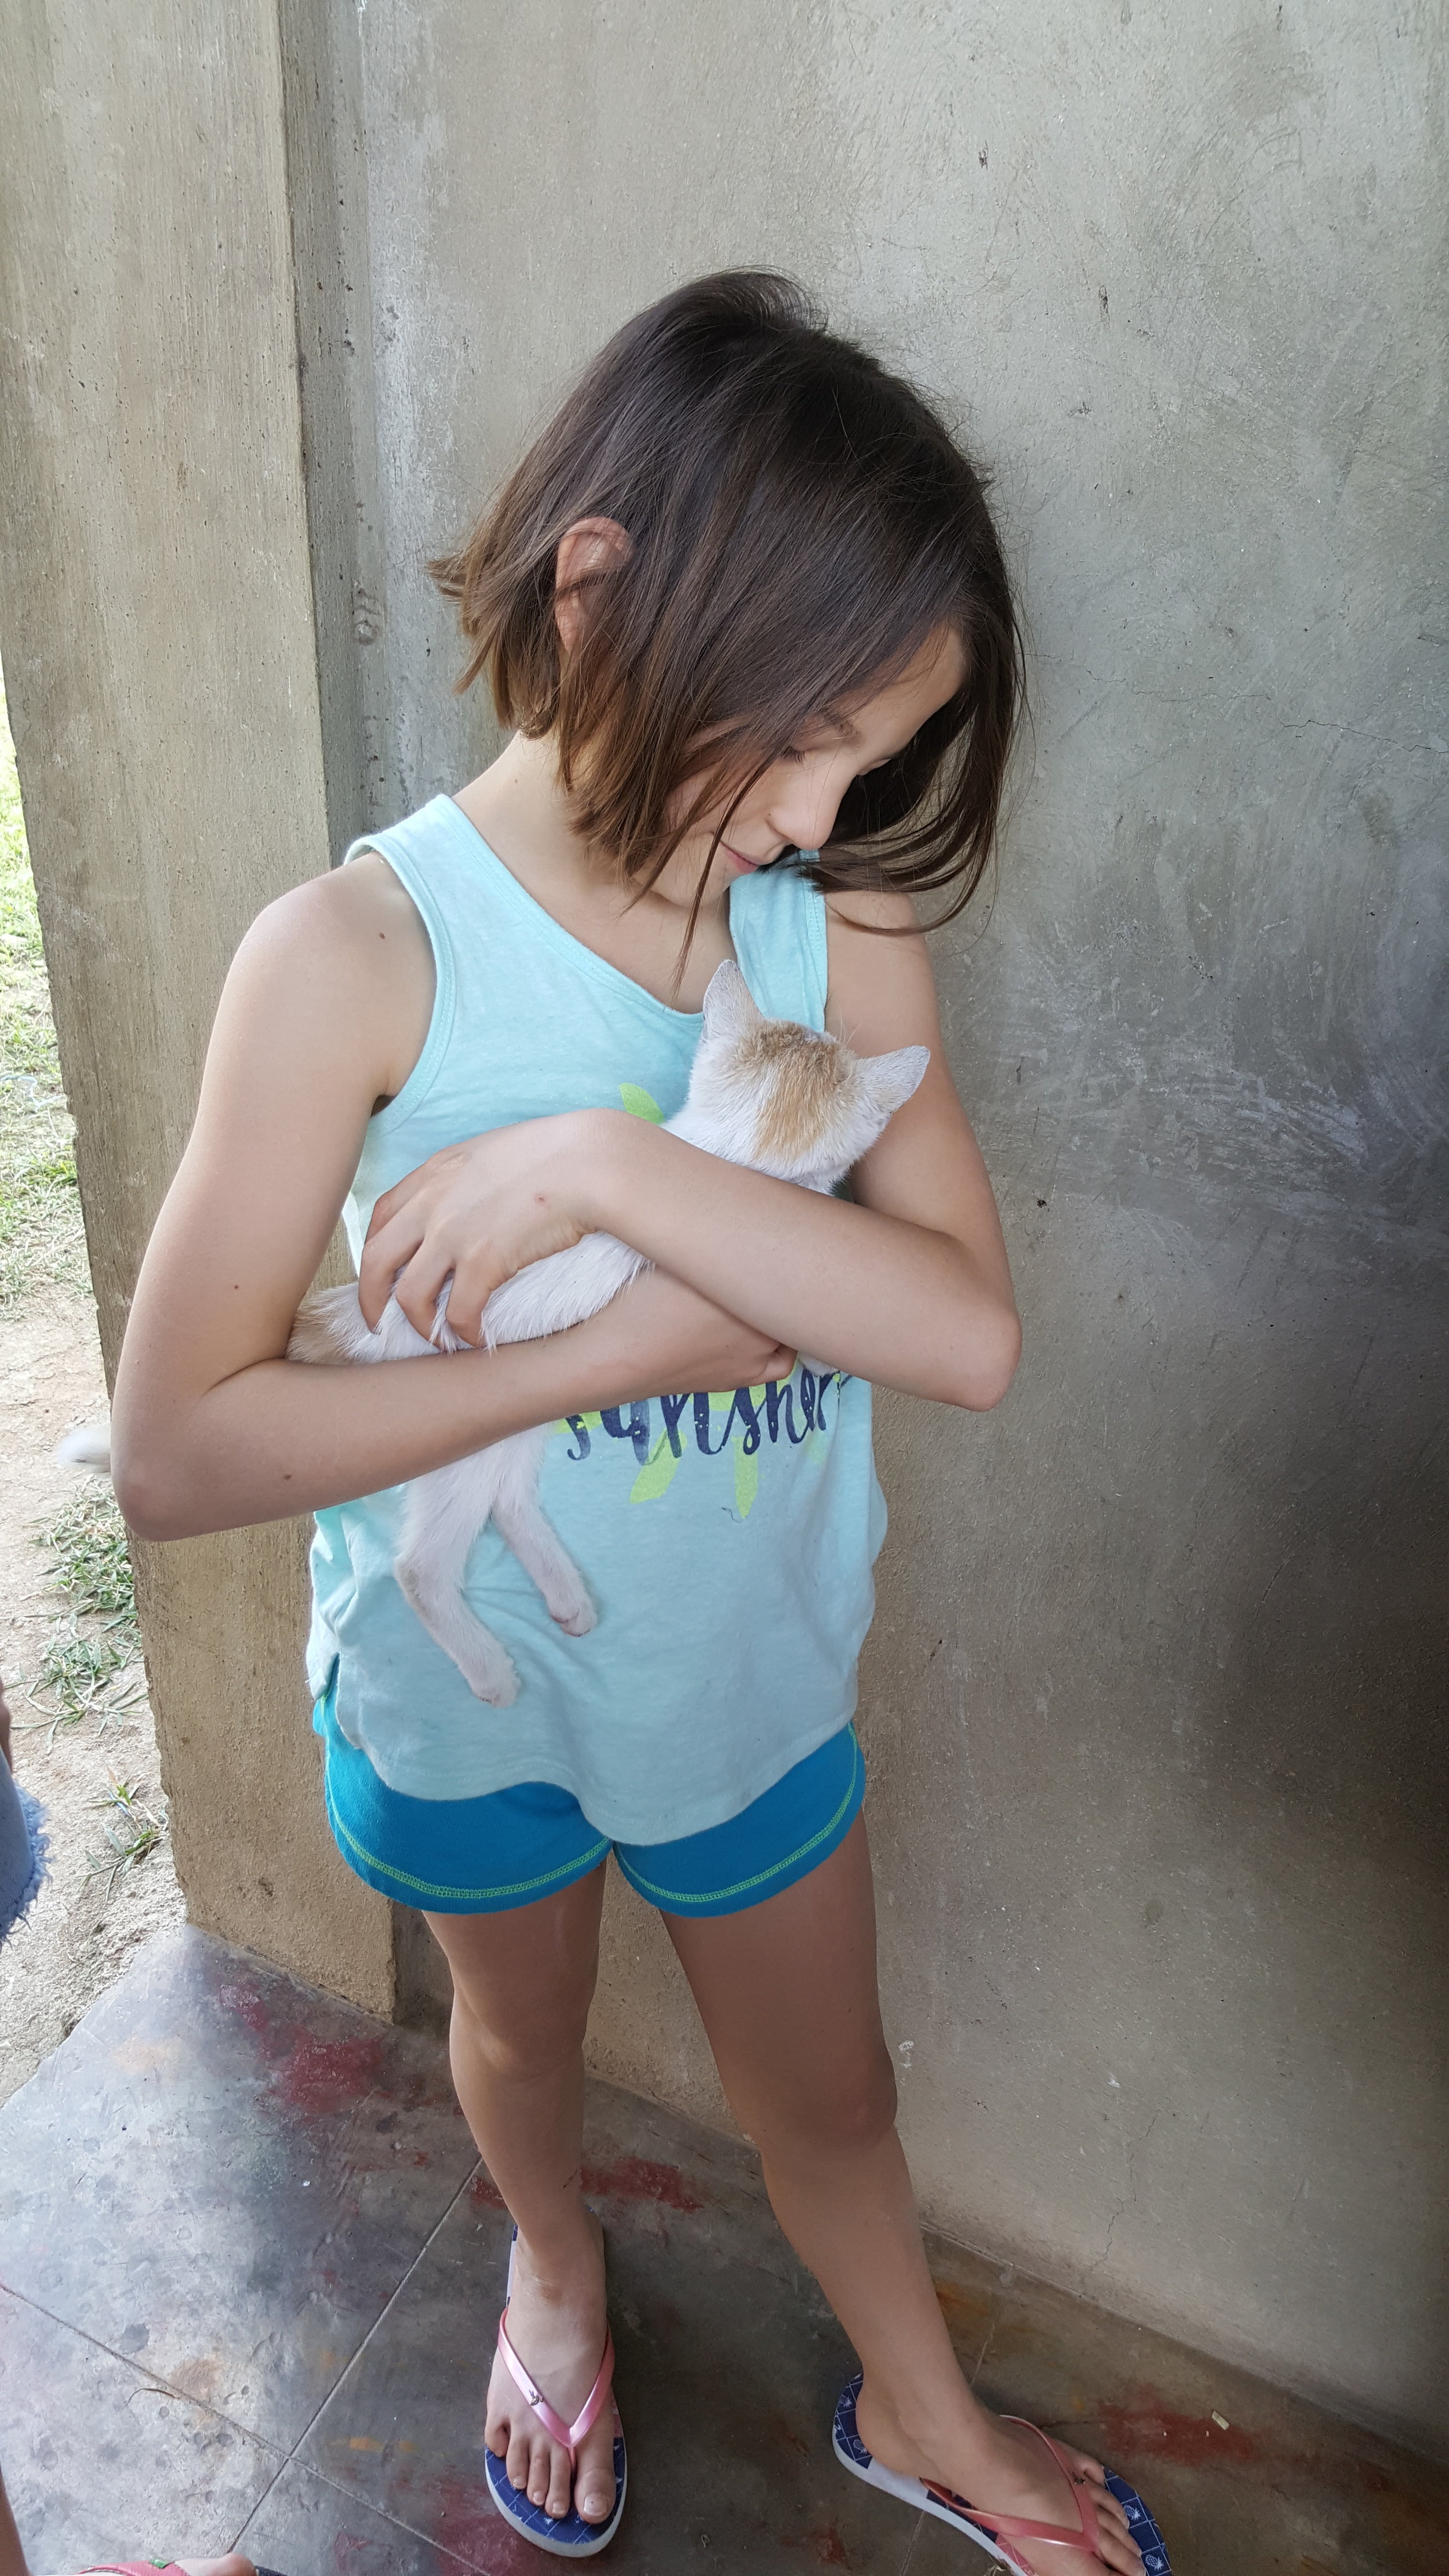  Gia found the kitty - Pistache 